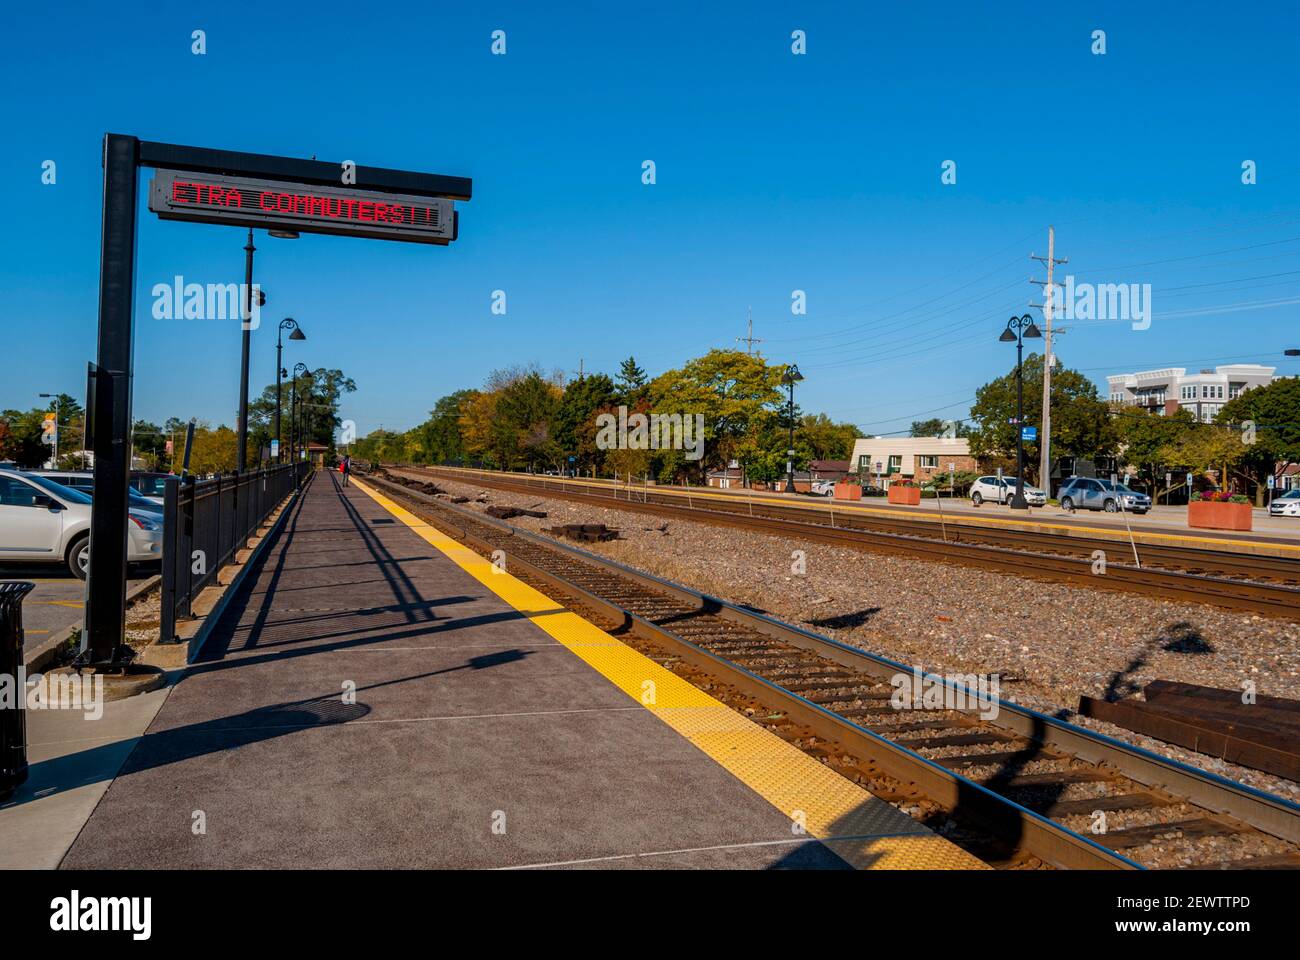 Bahnhofsplatz in Lisle, Illinois an einem sonnigen Tag ohne Zug in der Station. Stockfoto